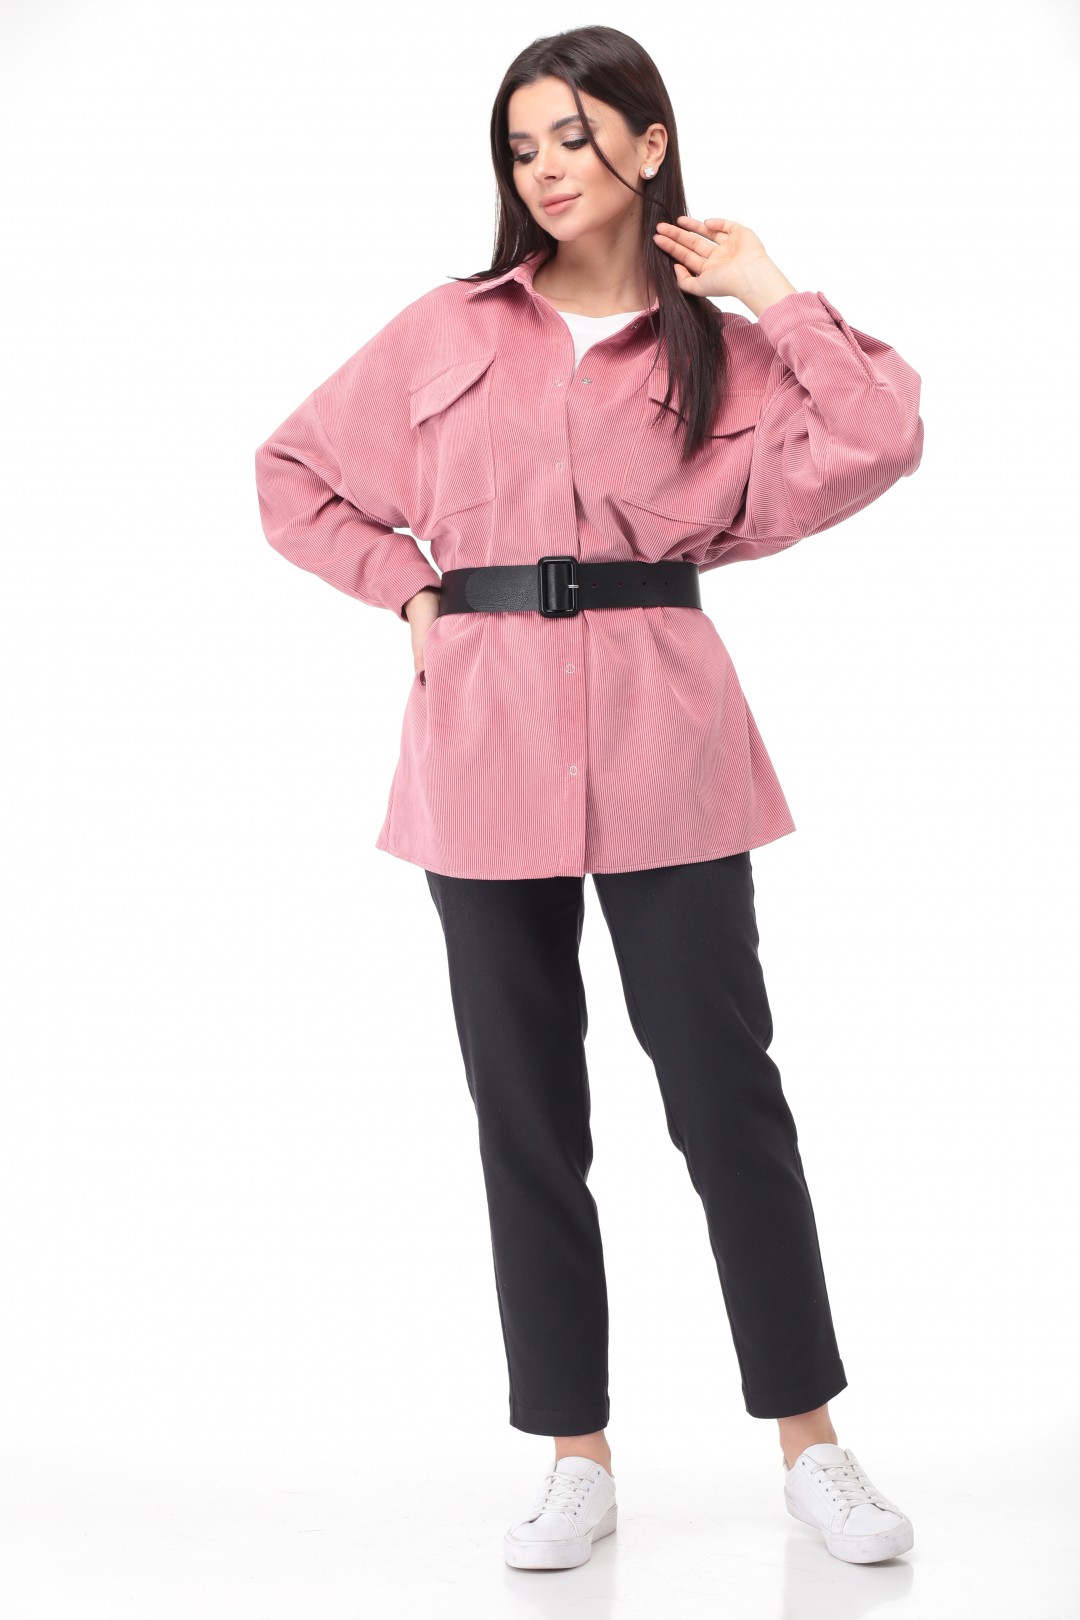 Блузка Angelina & Company 474р розовый